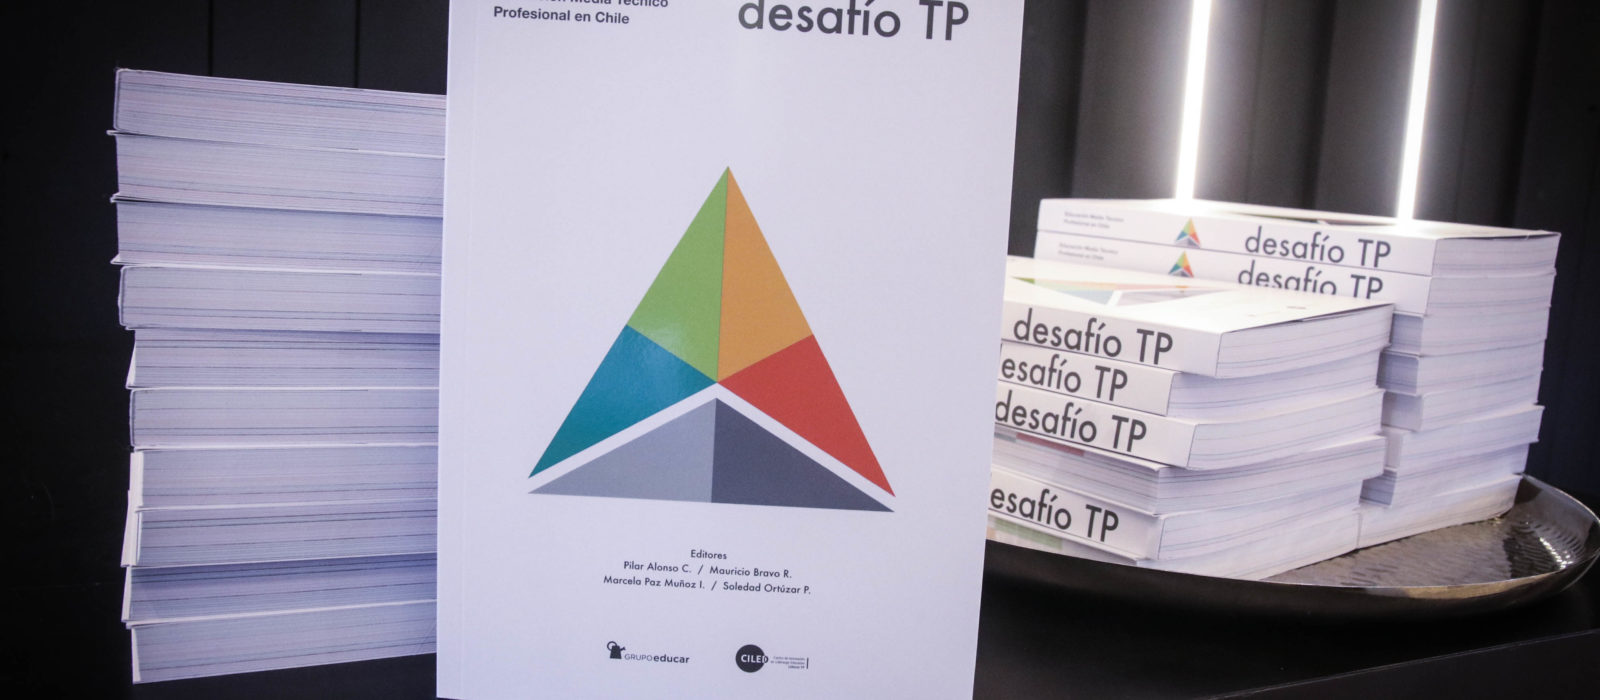 [DESCARGA] Desafío TP: Educación Media Técnico Profesional en Chile